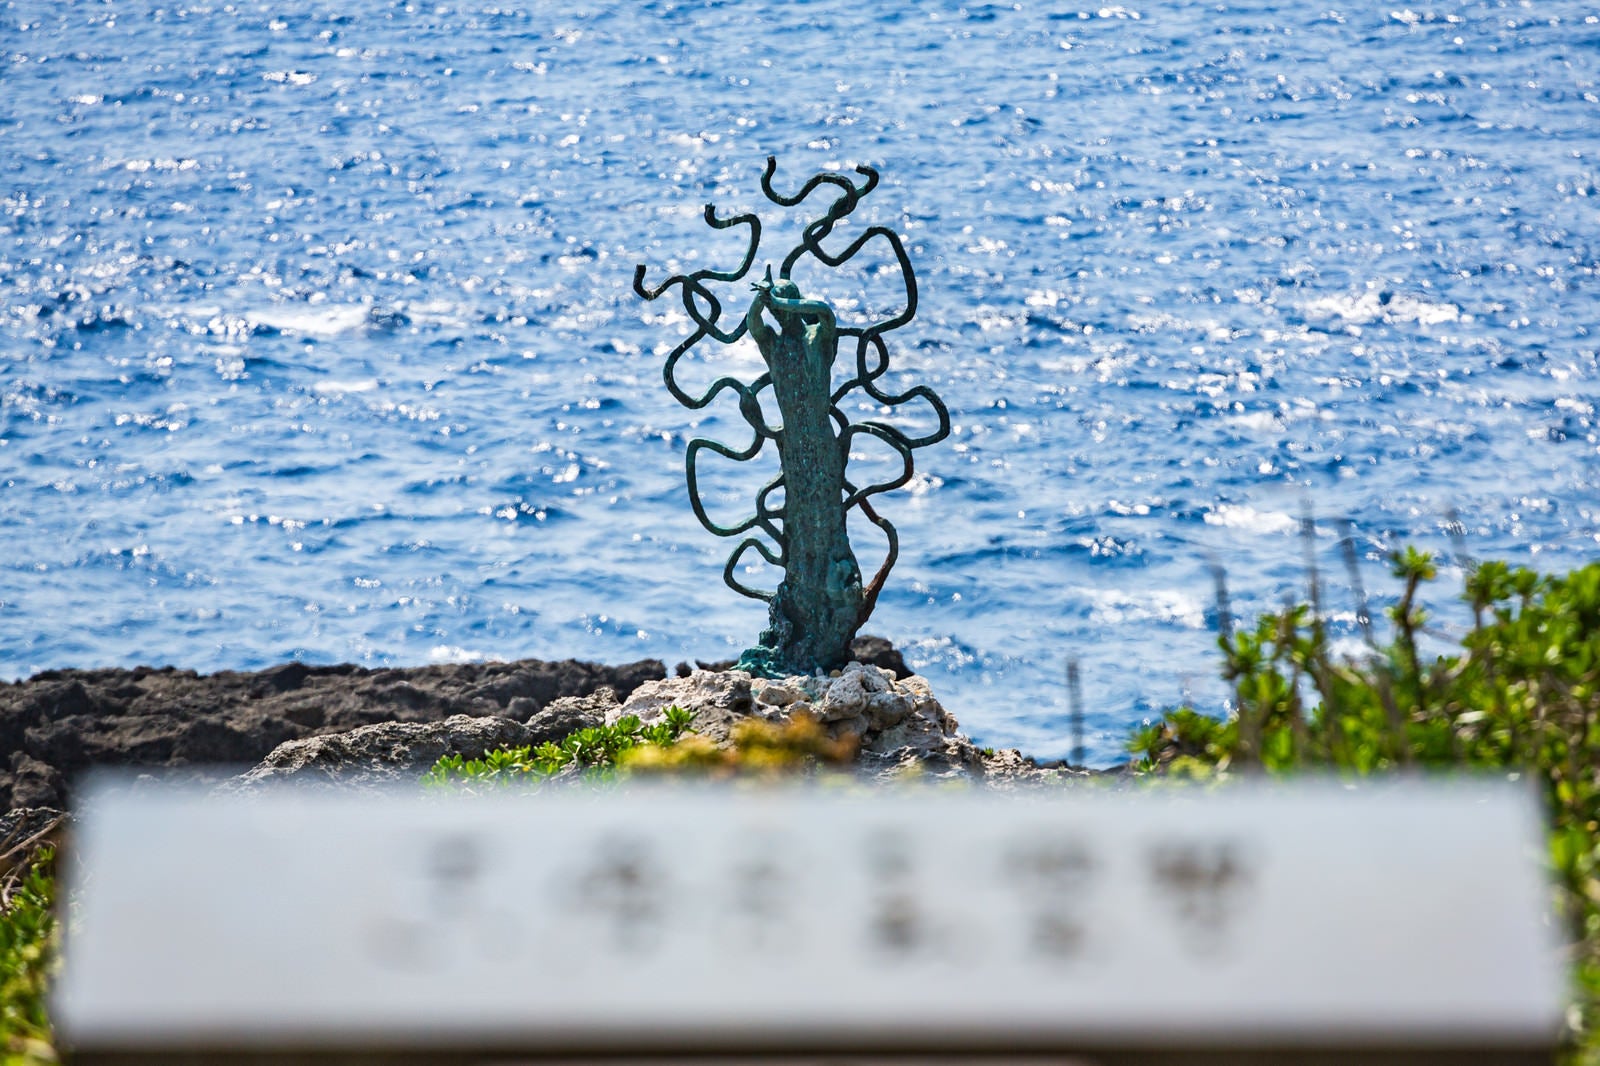 「戦艦大和慰霊塔の先にある海炎の像」の写真